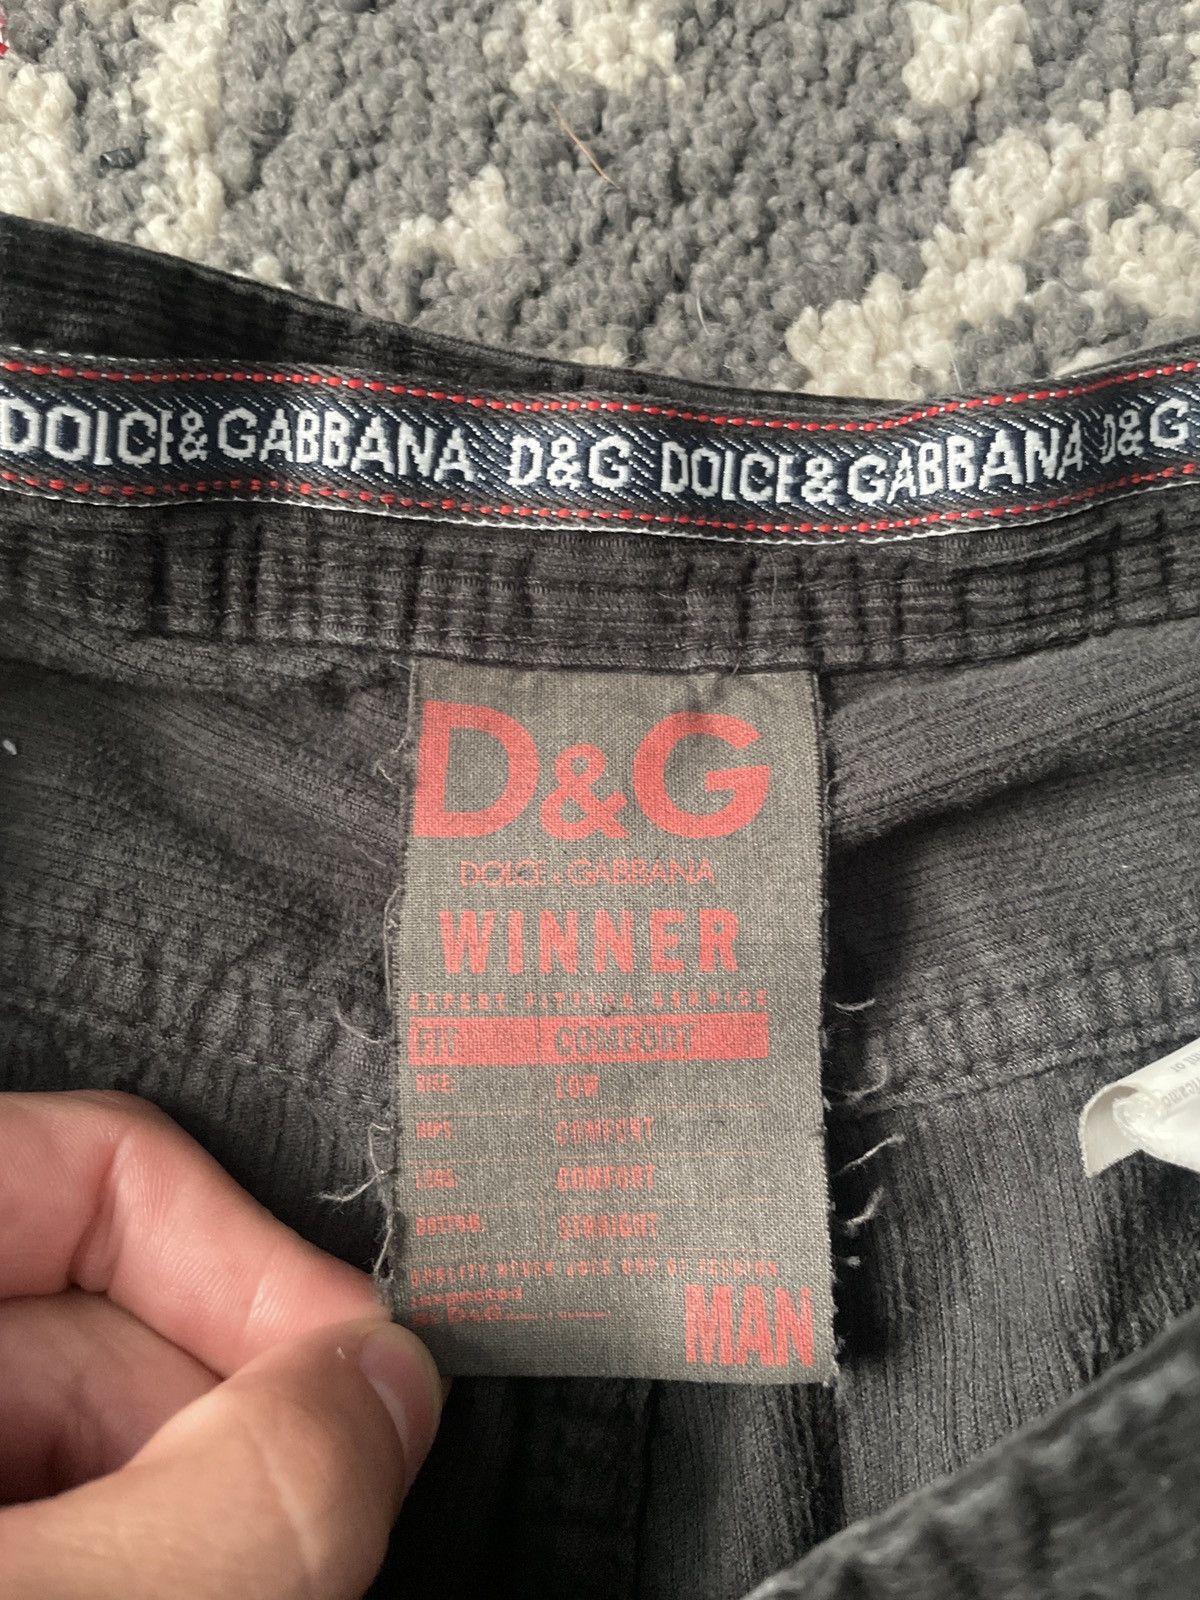 Dolce & Gabbana Dolce gabbana Size US 33 - 3 Preview